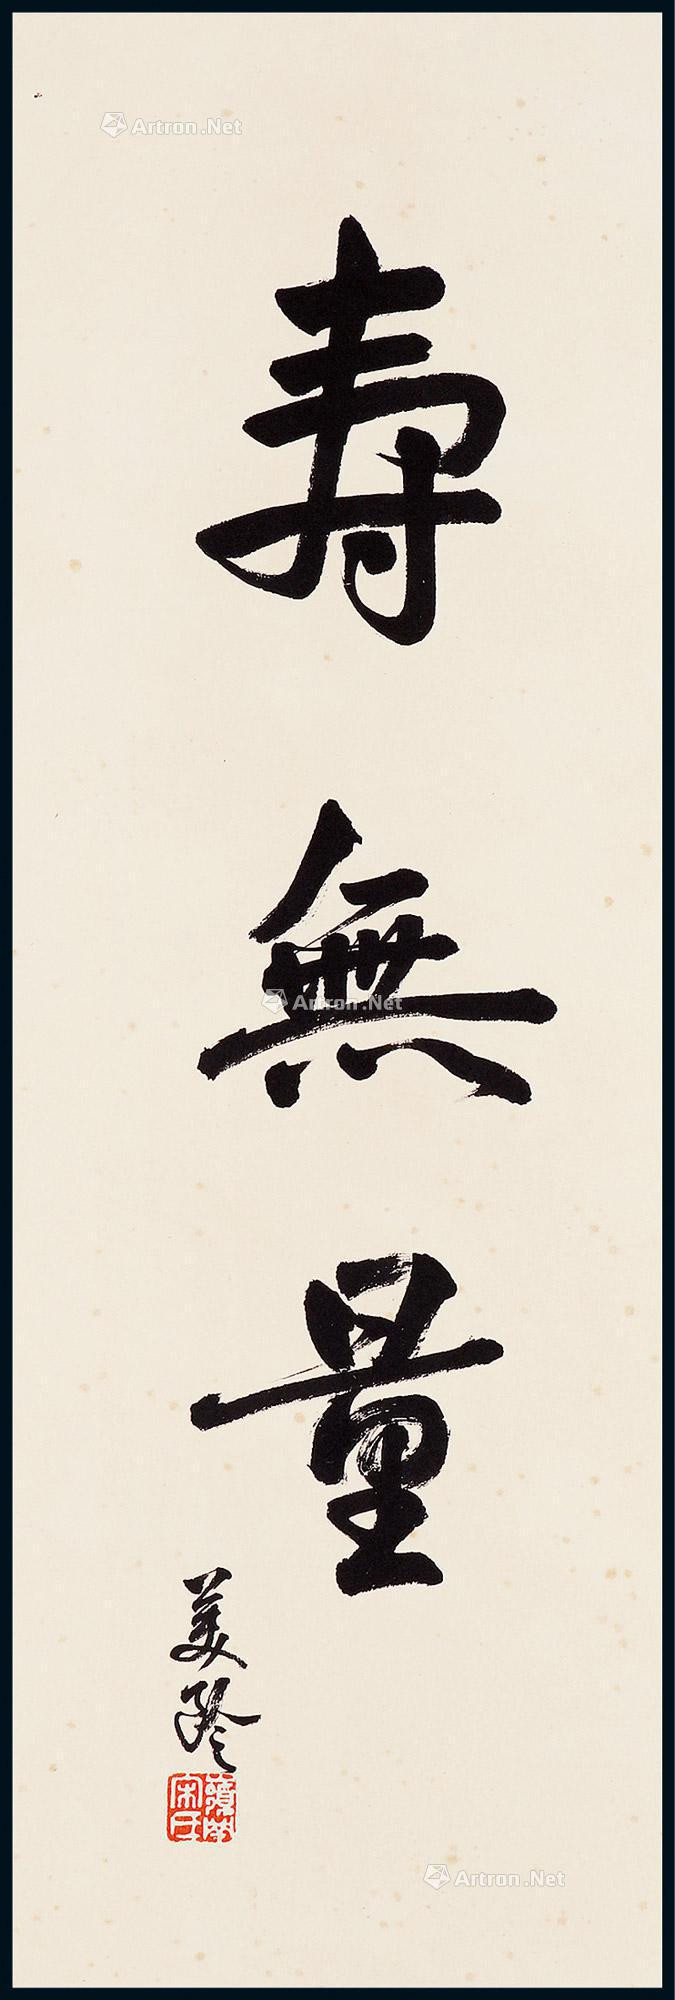 Calligraphy “Shou Wu Liang” by Soong mei-ling